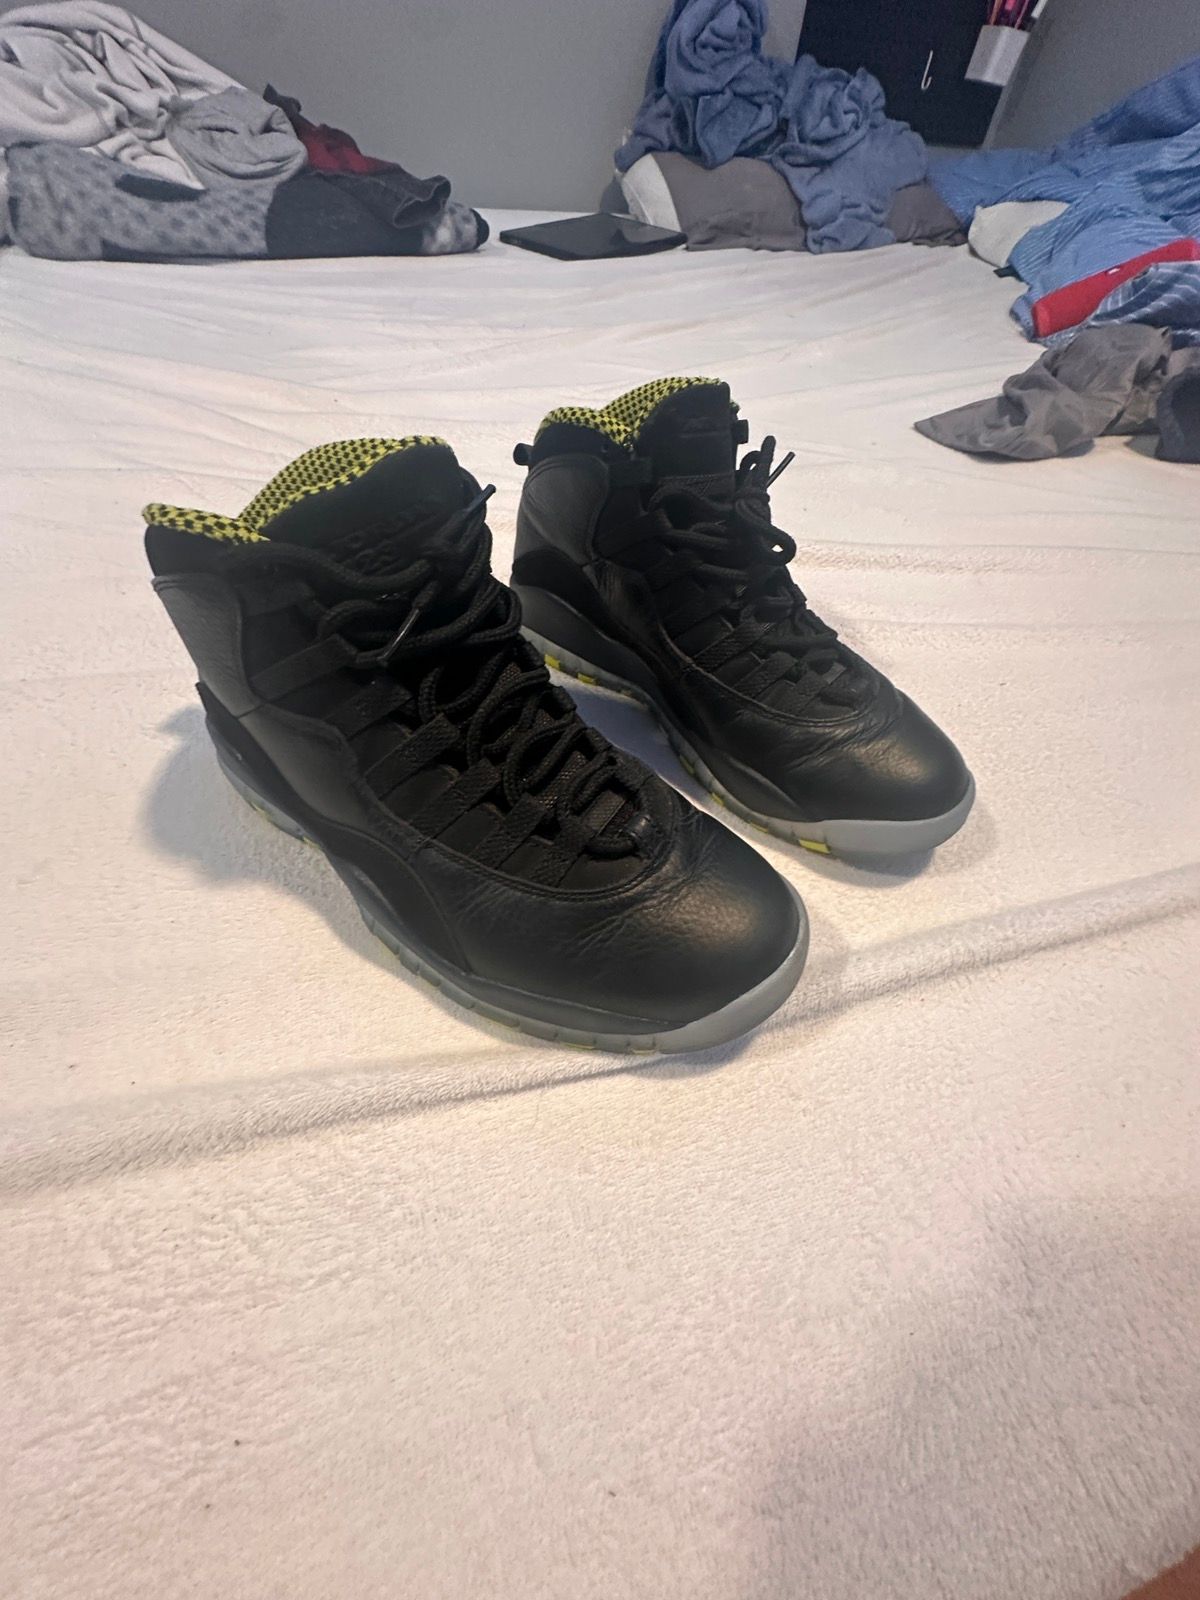 Nike Jordan retro 10 venoms Size US 8.5 / EU 41-42 - 8 Thumbnail